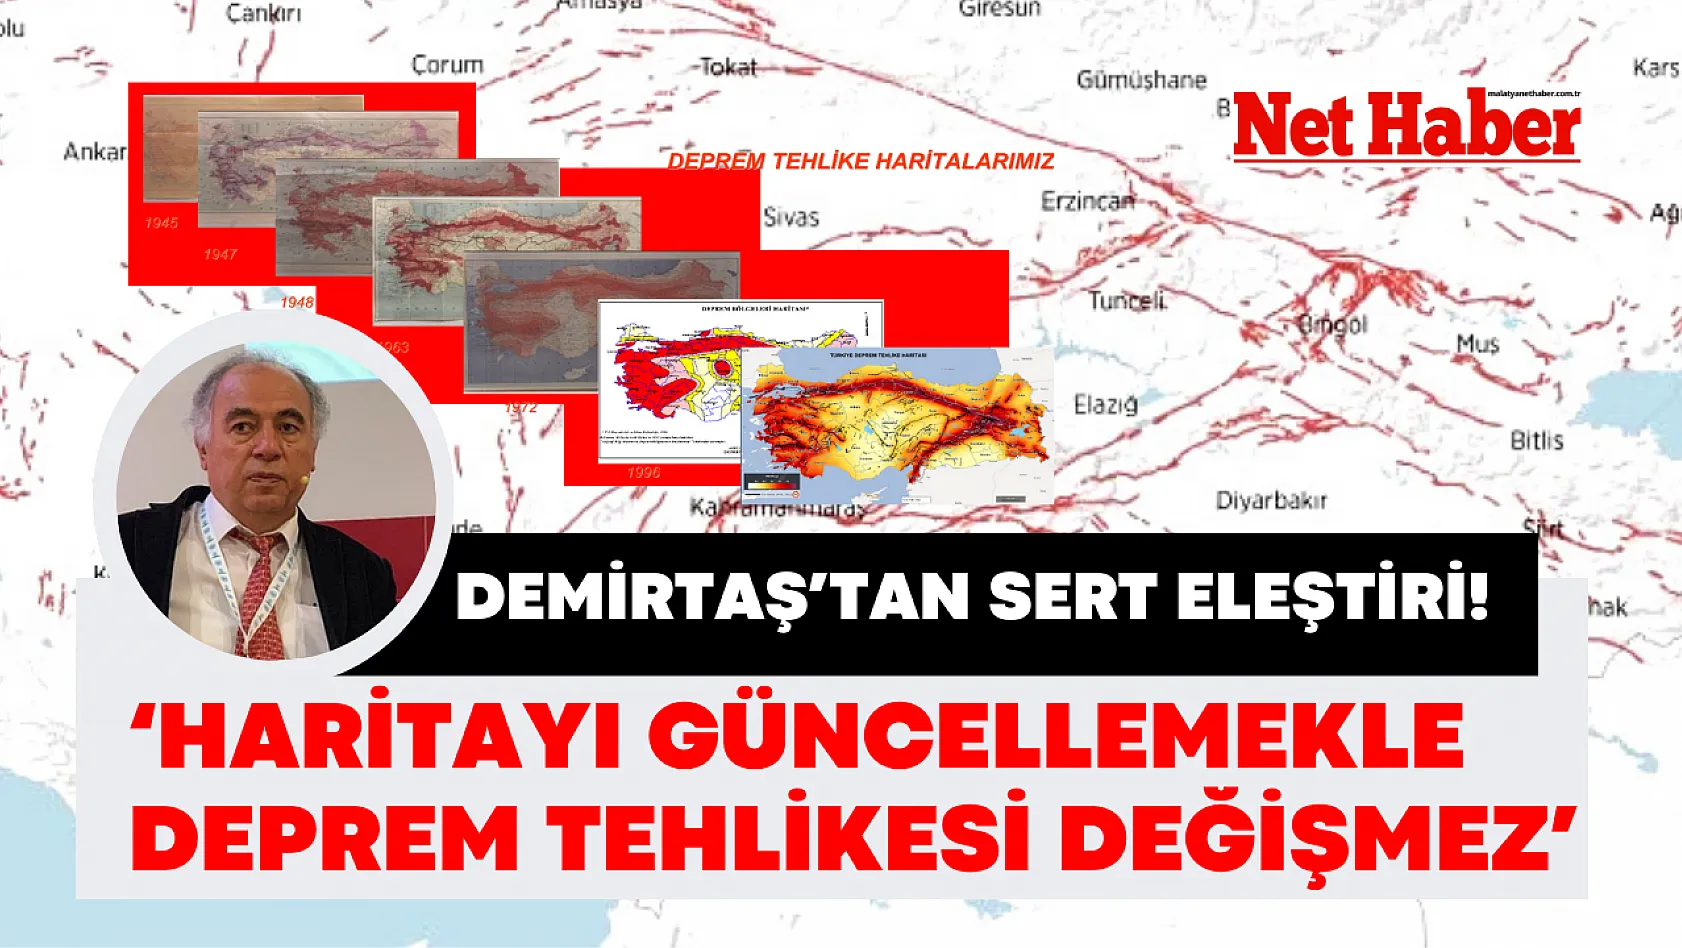 Demirtaş'tan sert eleştiri! 'Haritayı güncellemekle deprem tehlikesi değişmez'